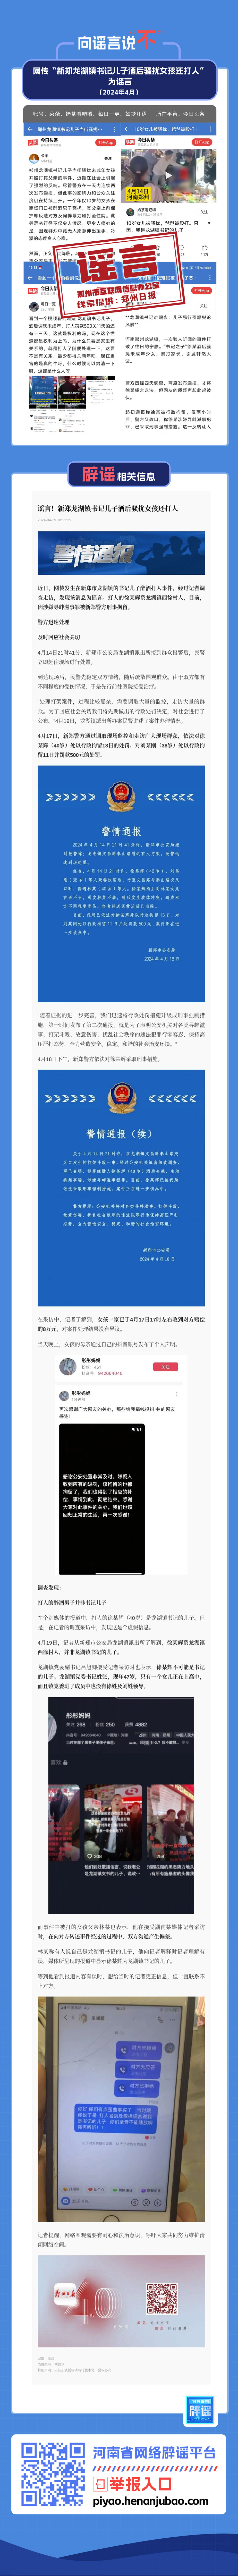 网传“新郑龙湖镇书记儿子酒后骚扰女孩还打人”为谣言